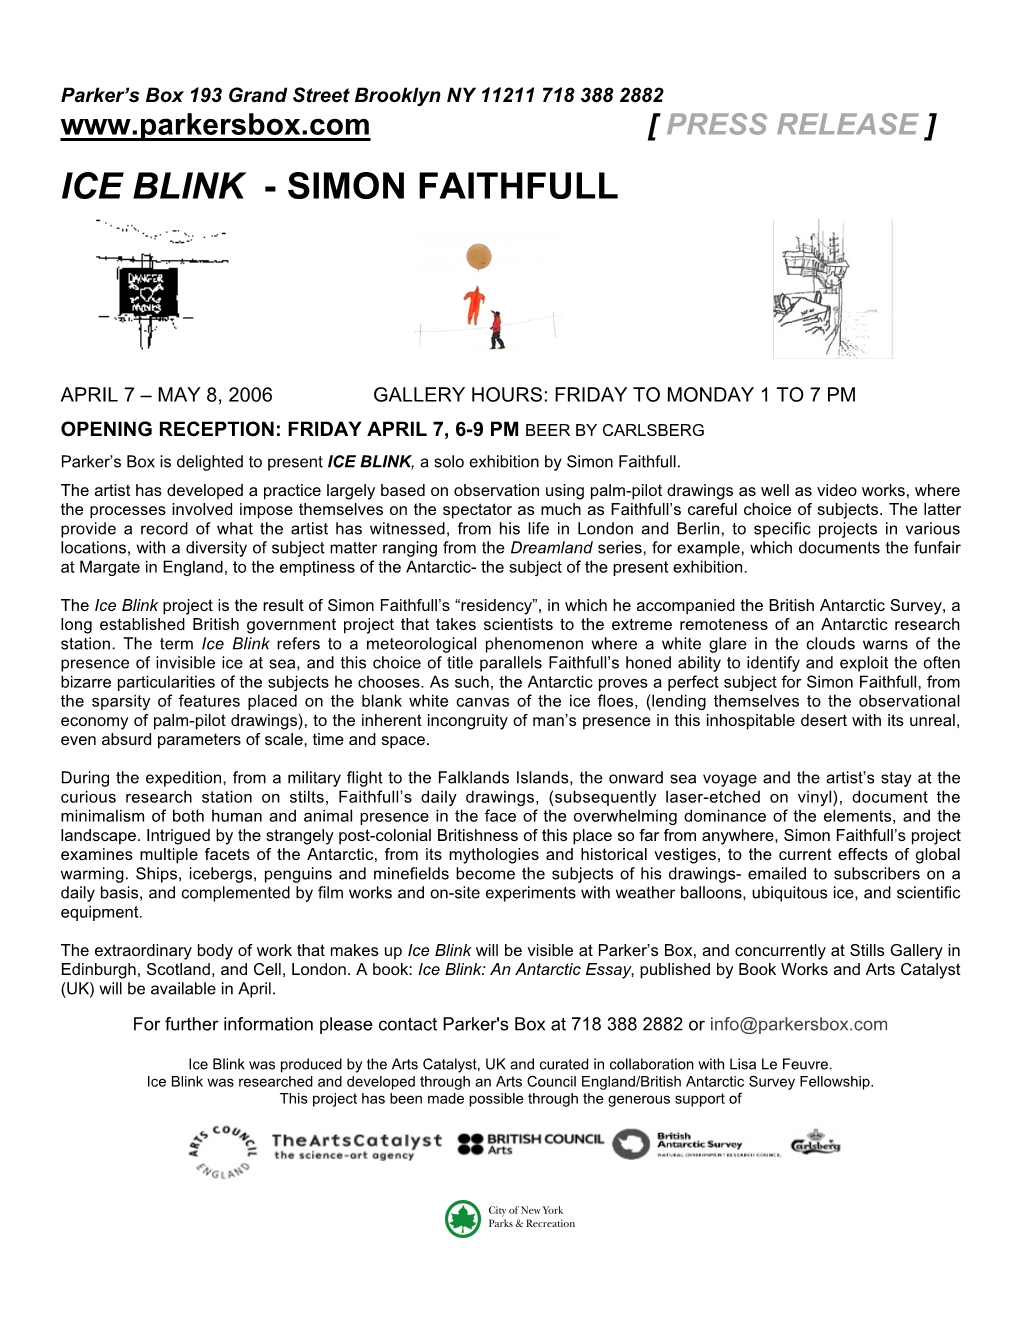 Ice Blink - Simon Faithfull